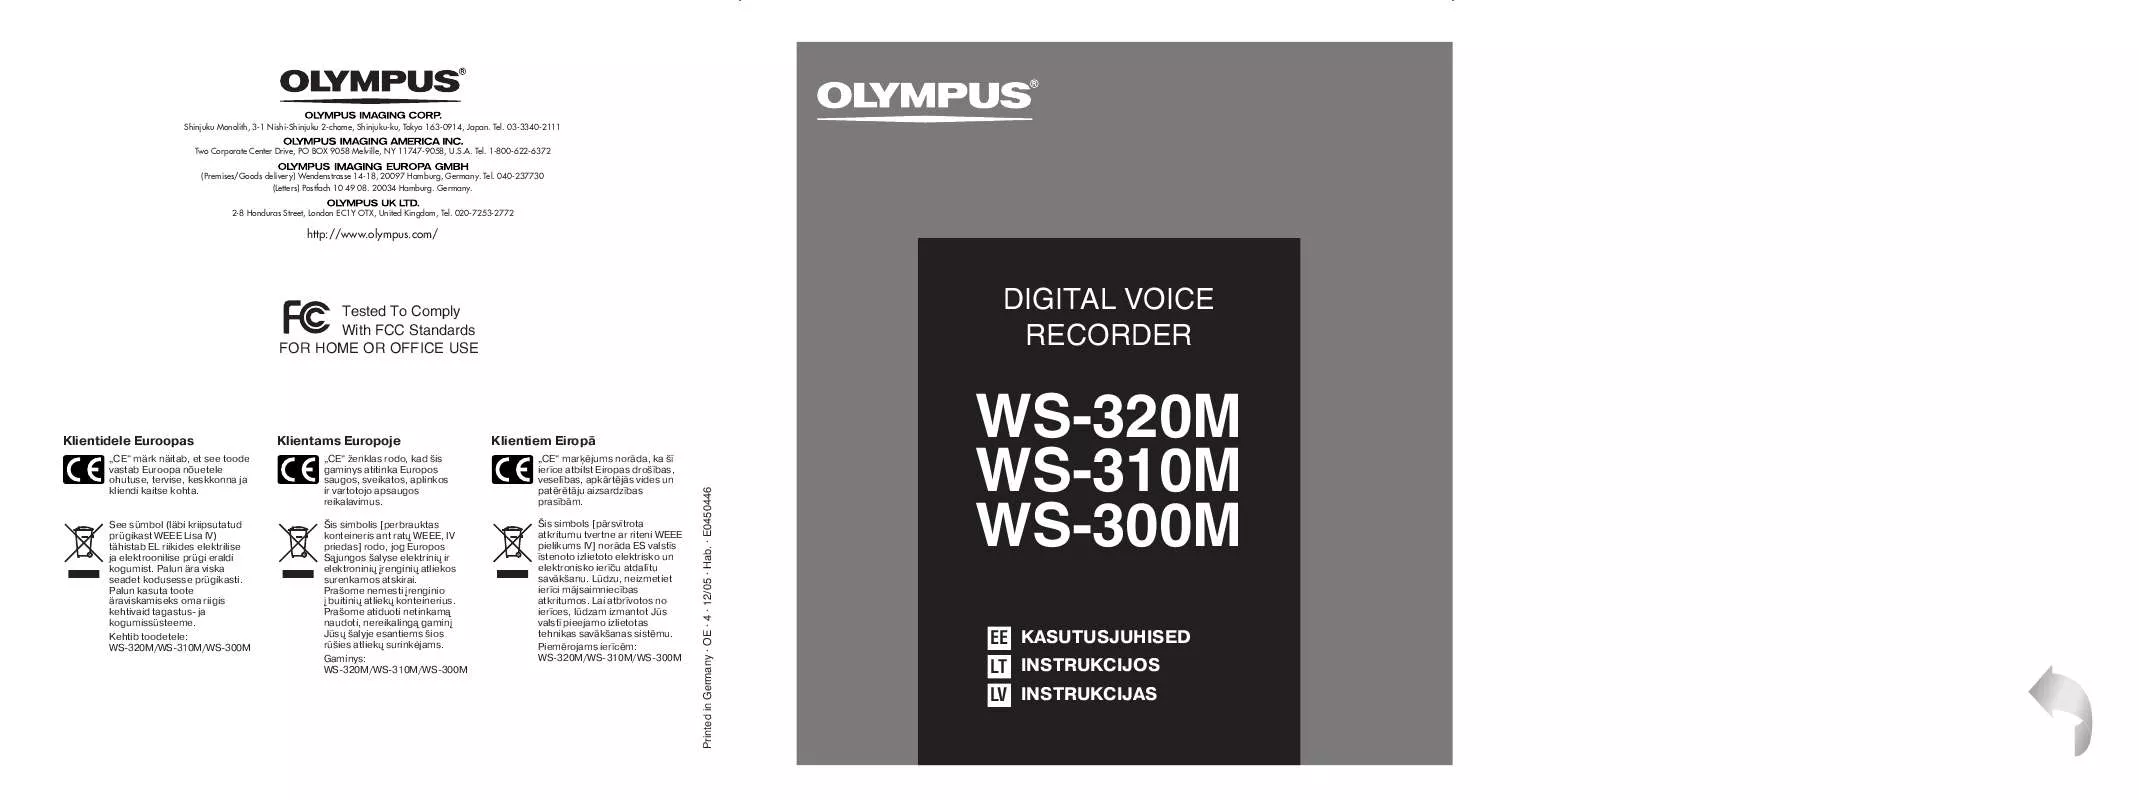 Mode d'emploi OLYMPUS WS-310M